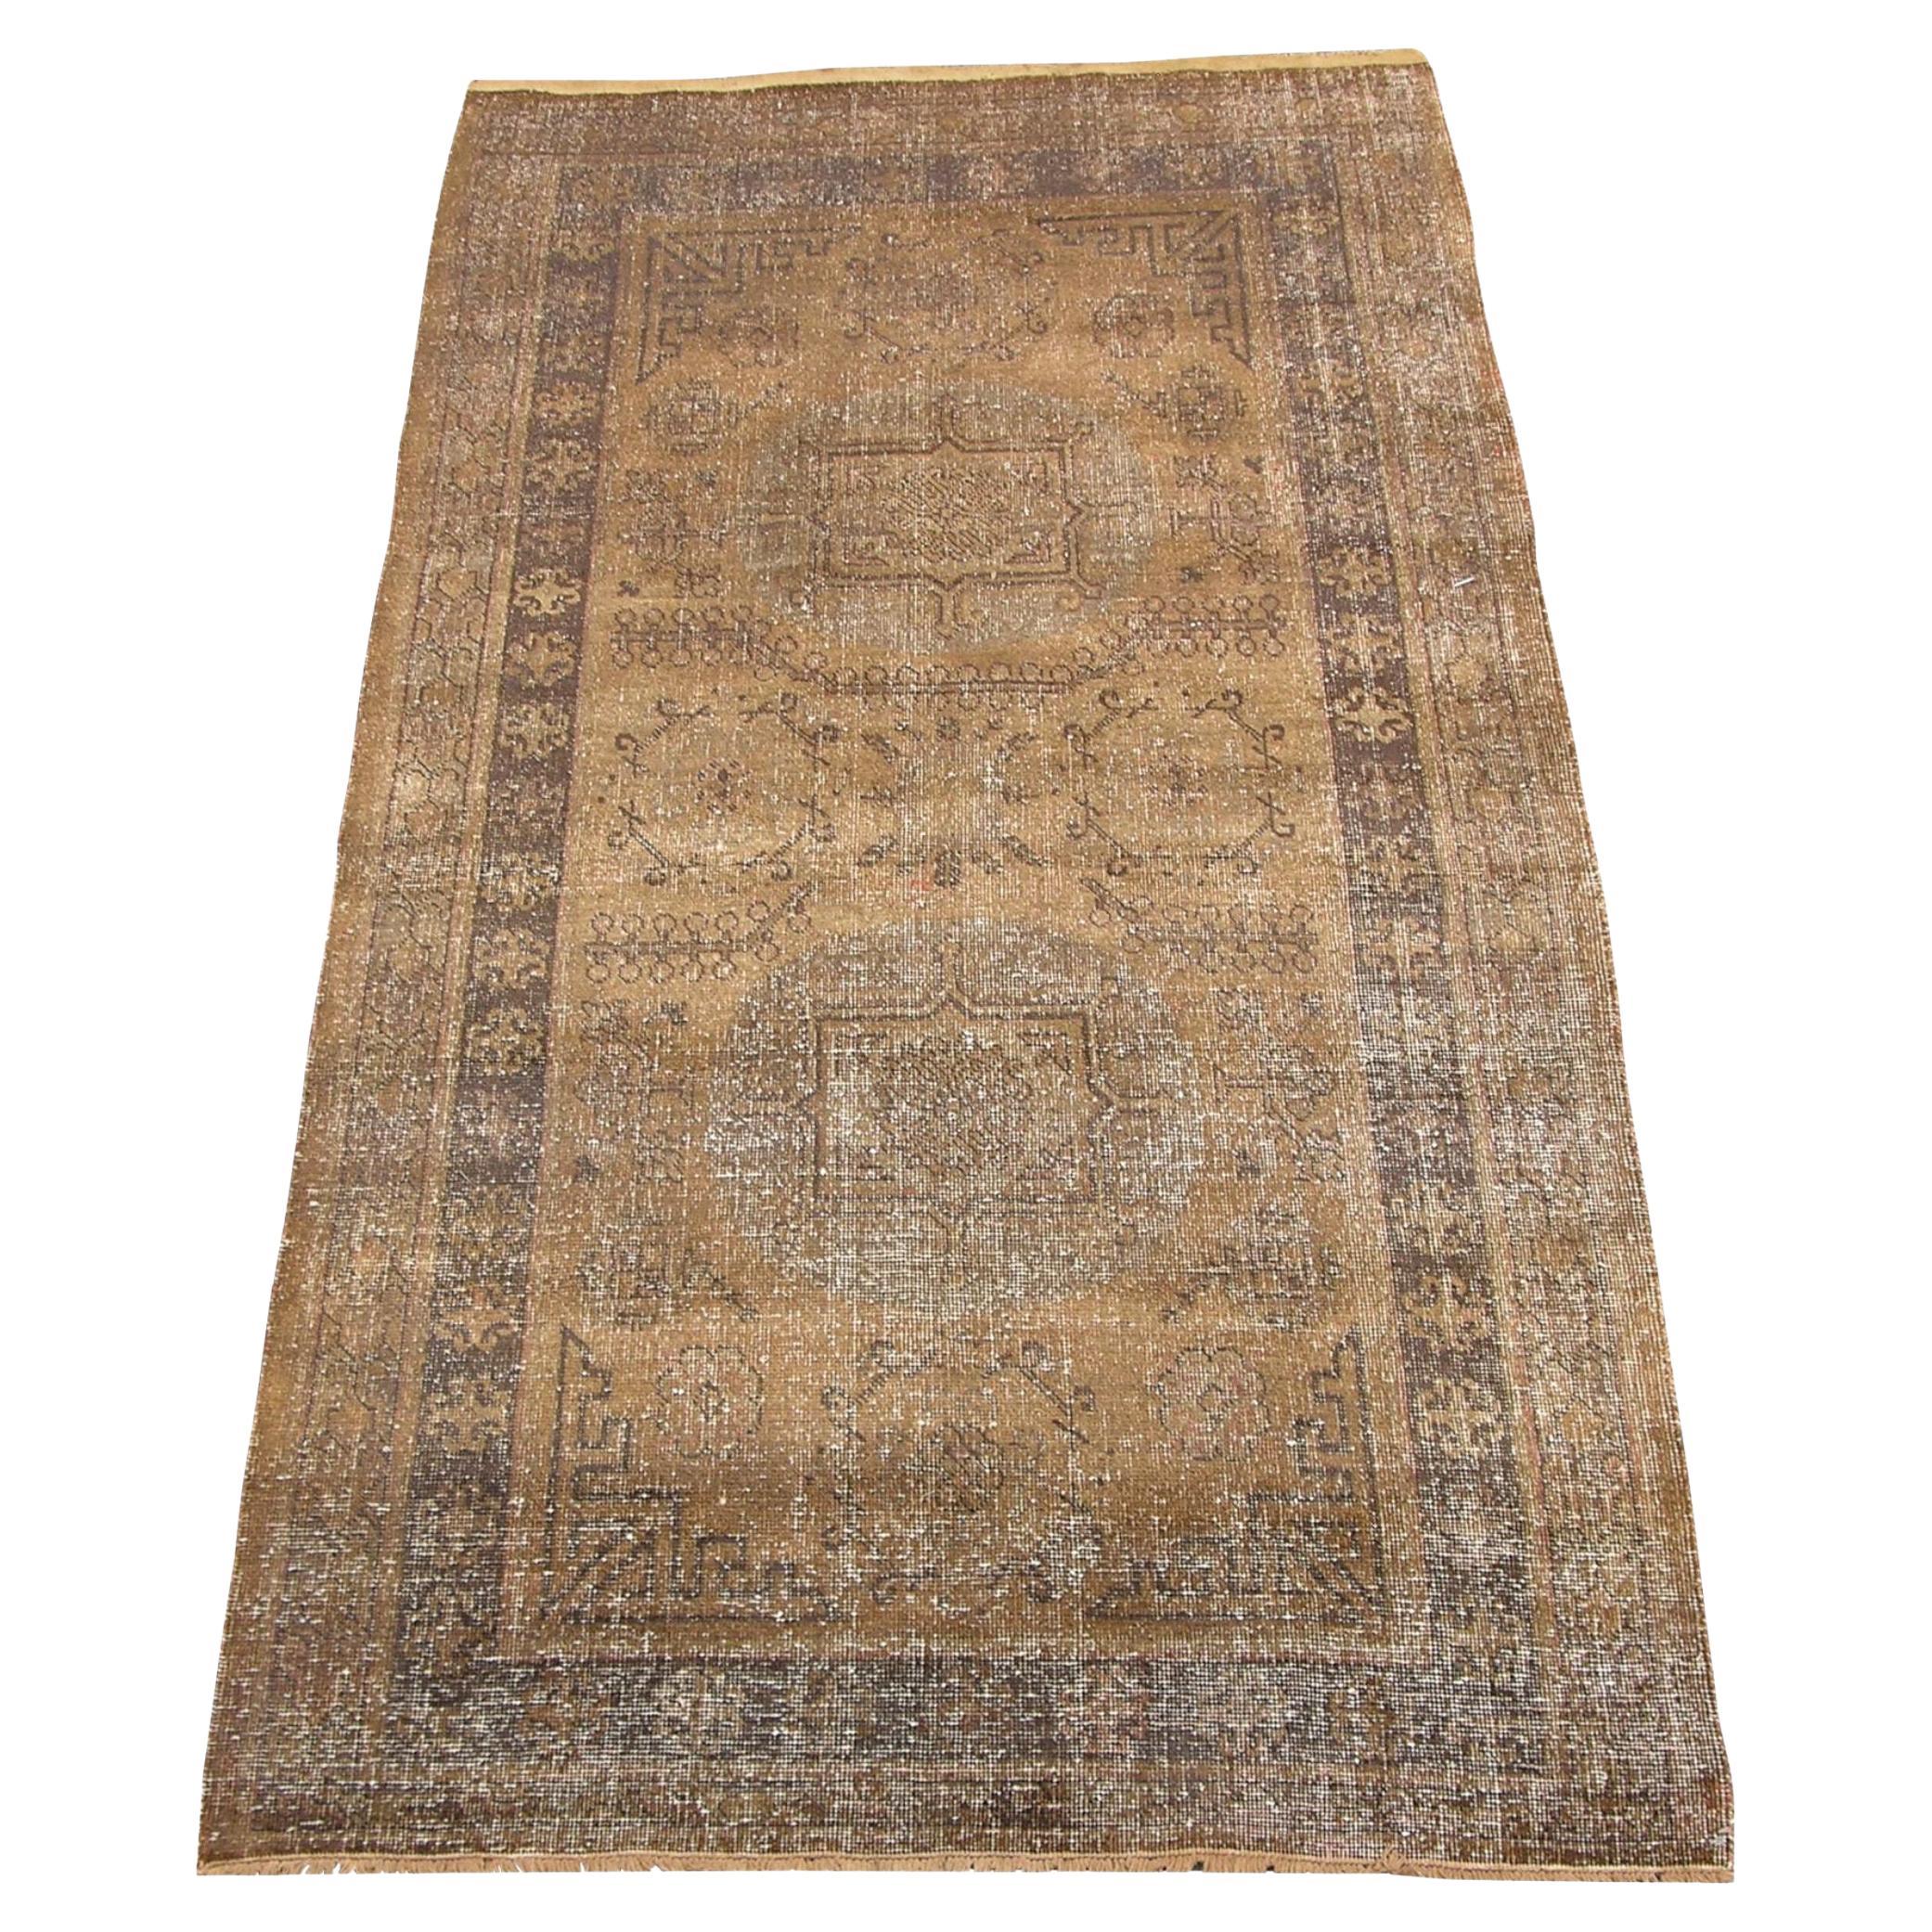 Muted Faded Khotan Samarkand-Teppich aus dem späten 19. Jahrhundert